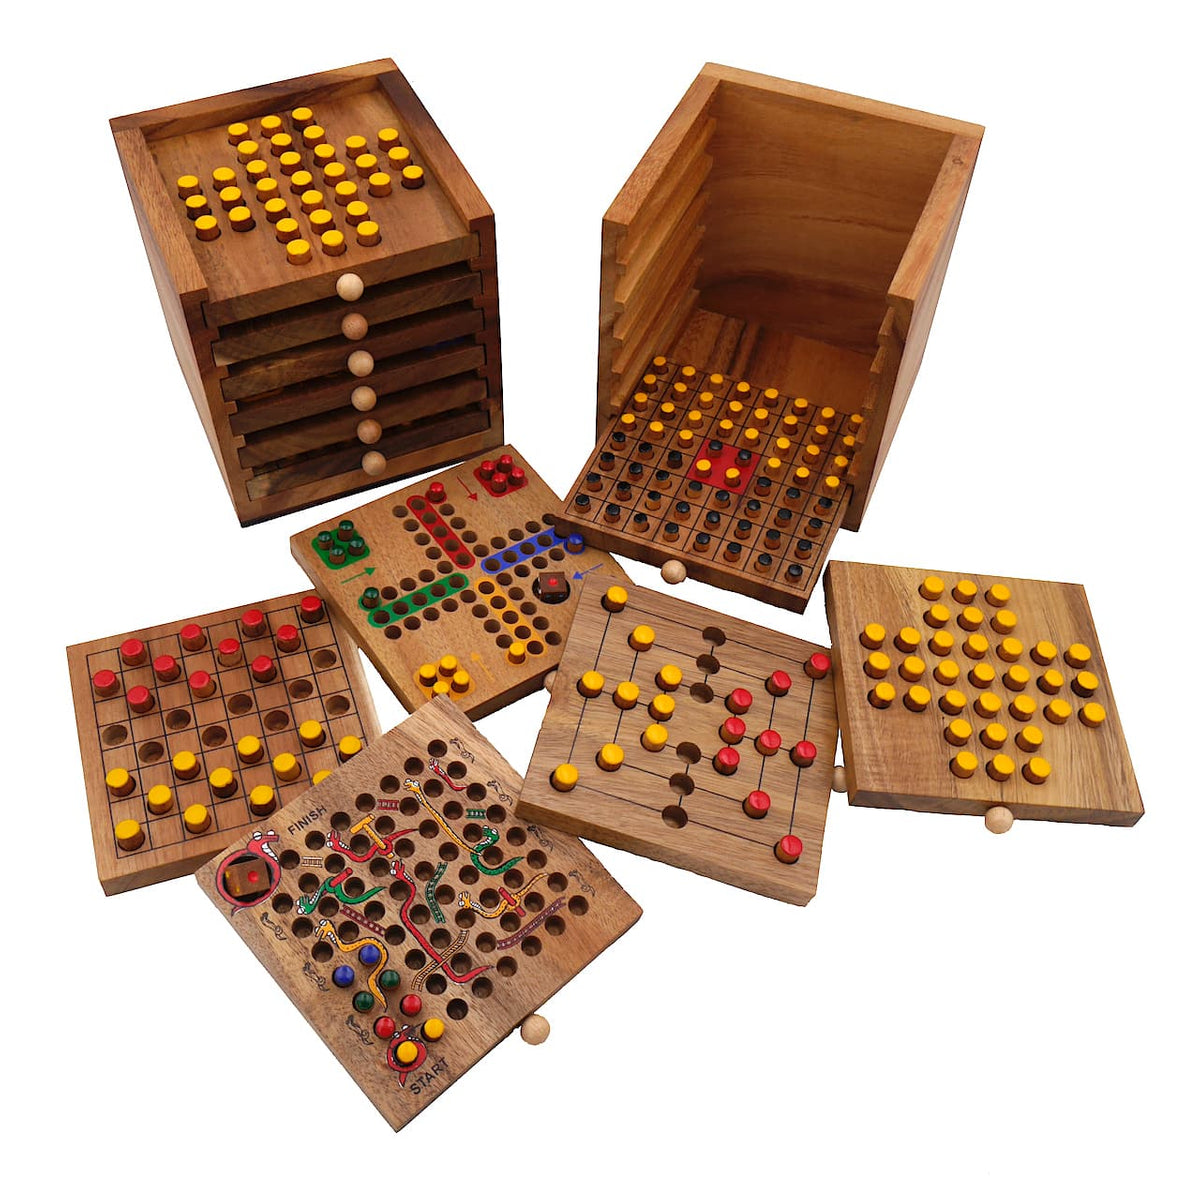 Spielesammlung in einer praktischen Holzbox